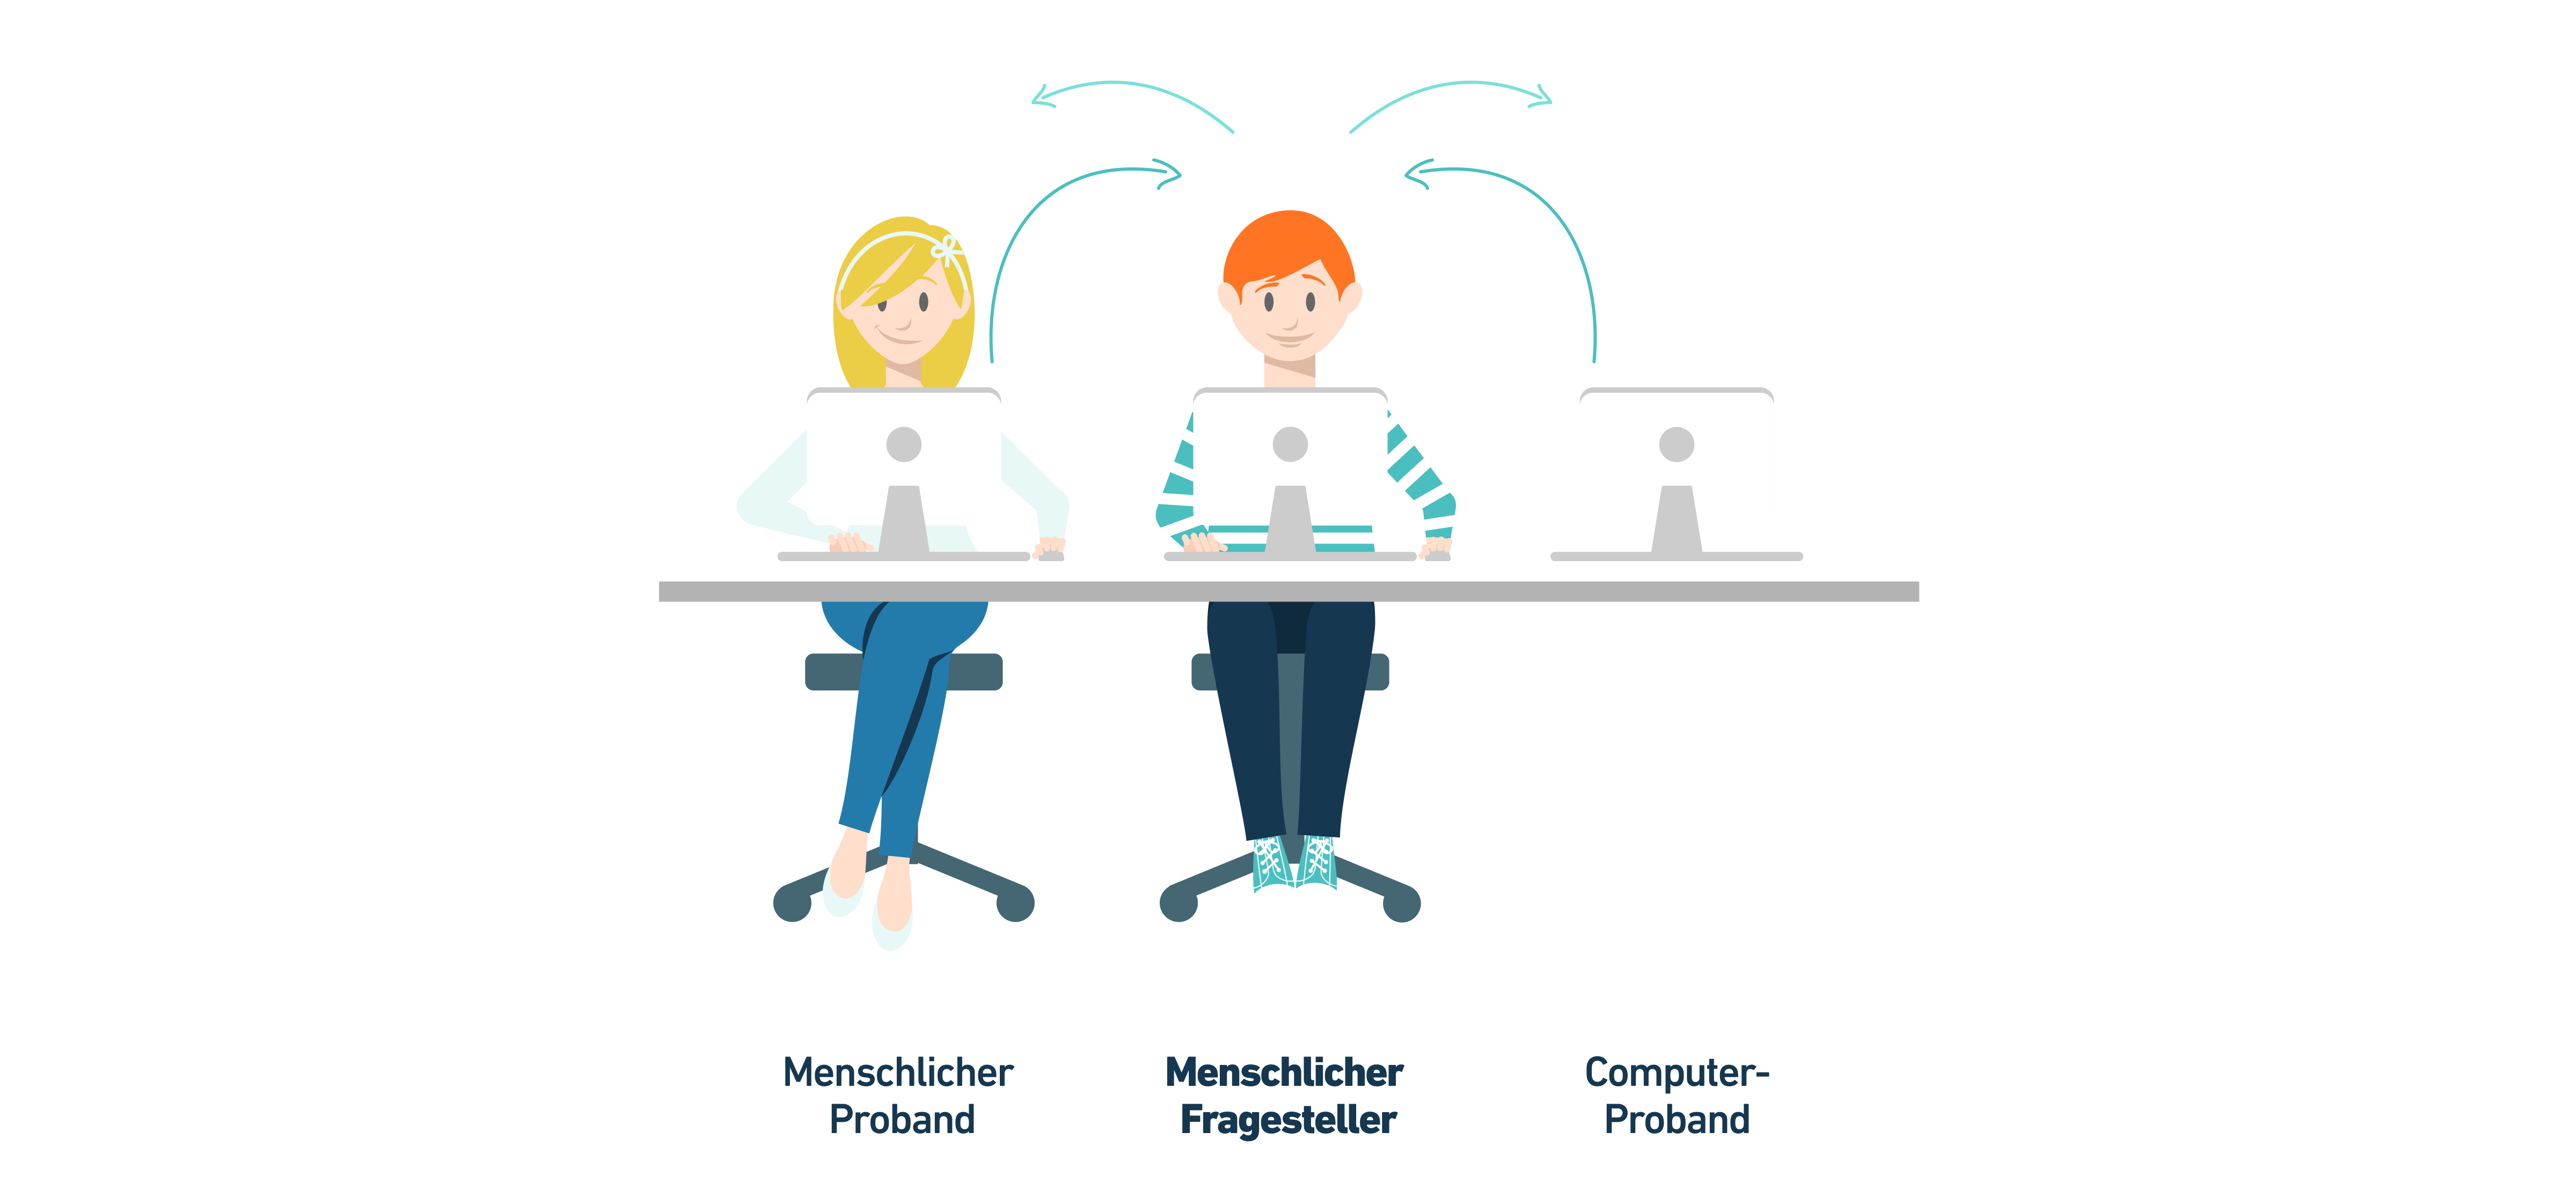 Ein Schreibtisch mit drei Bildschirmen an denen zwei Personen sitzen. Unter dem ersten steht "menschlicher Proband", unter dem zweiten "menschlicher Fragesteller" und unter dem dritten "Computer Proband".